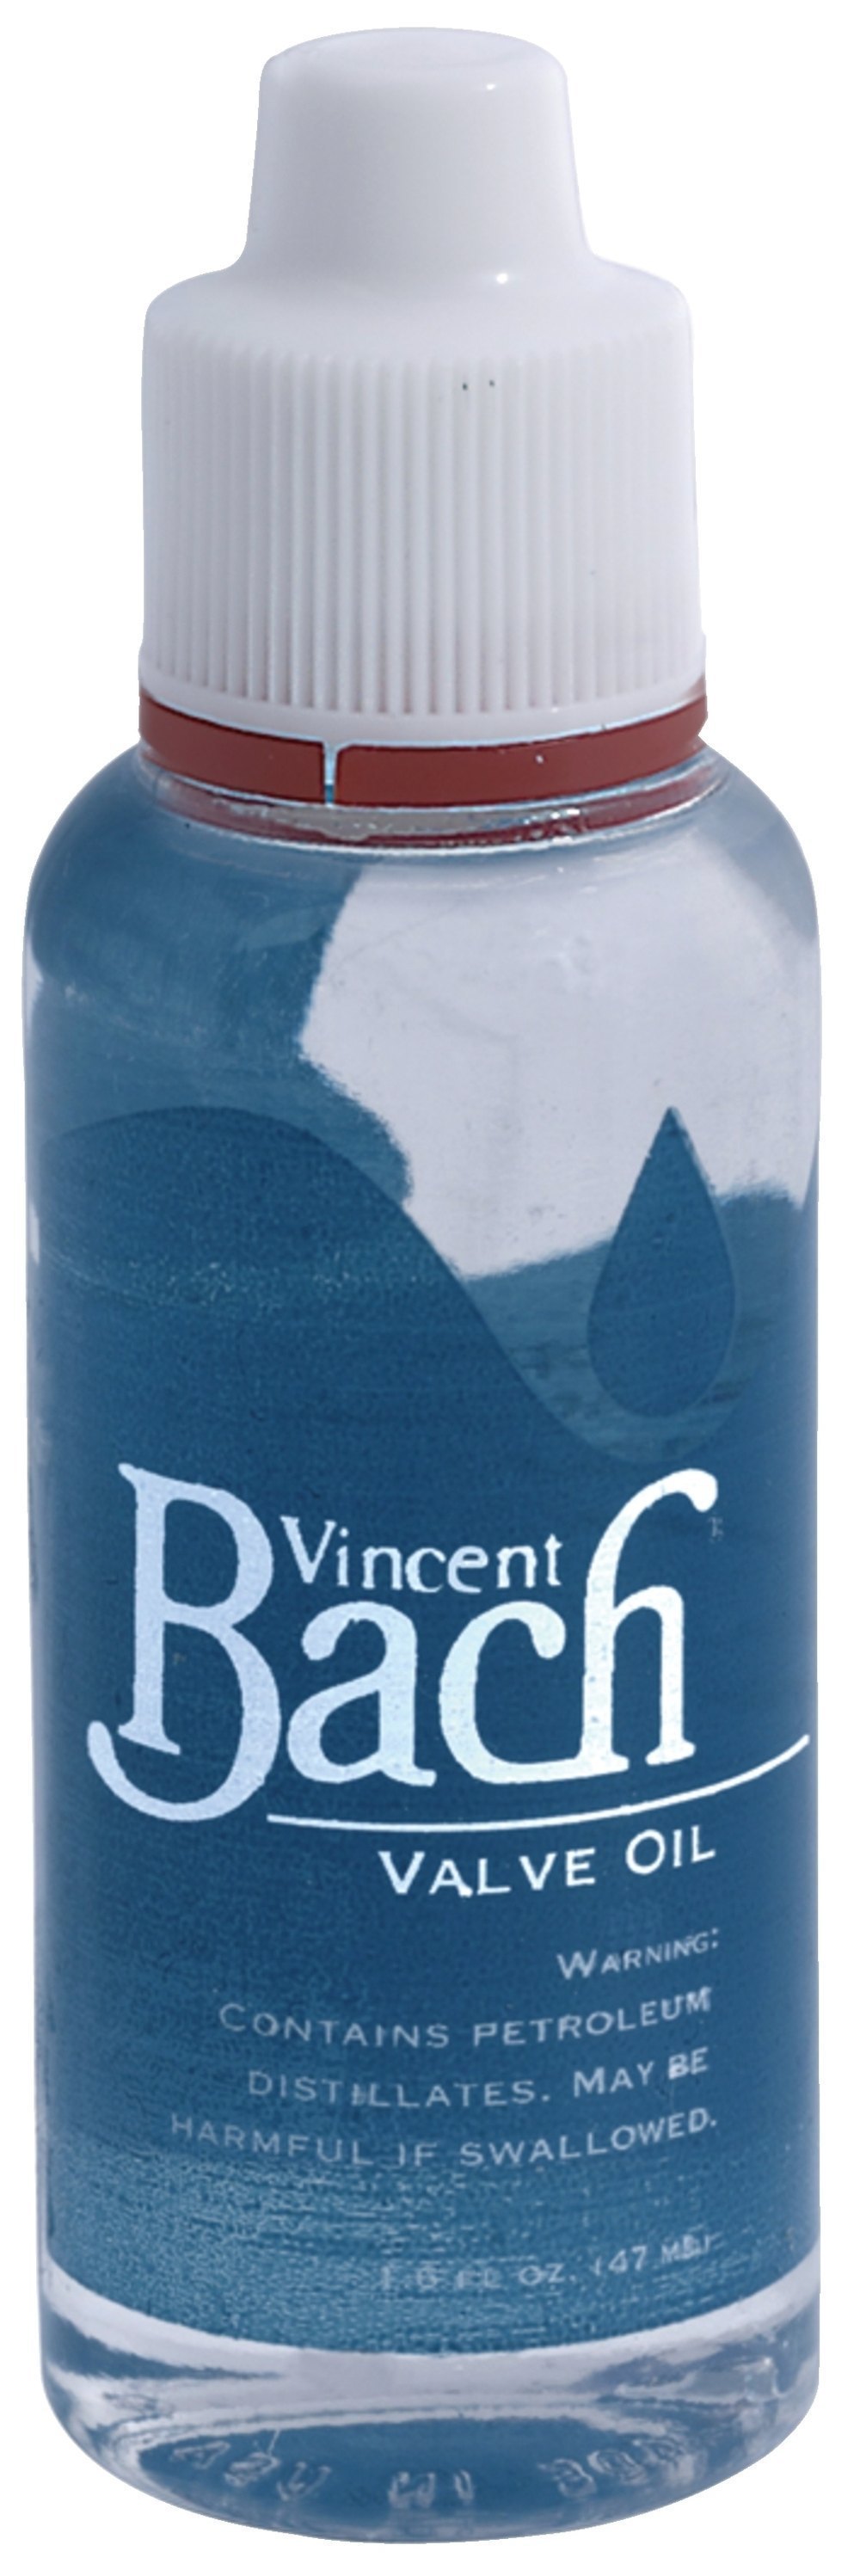 Bach Valve Oil 